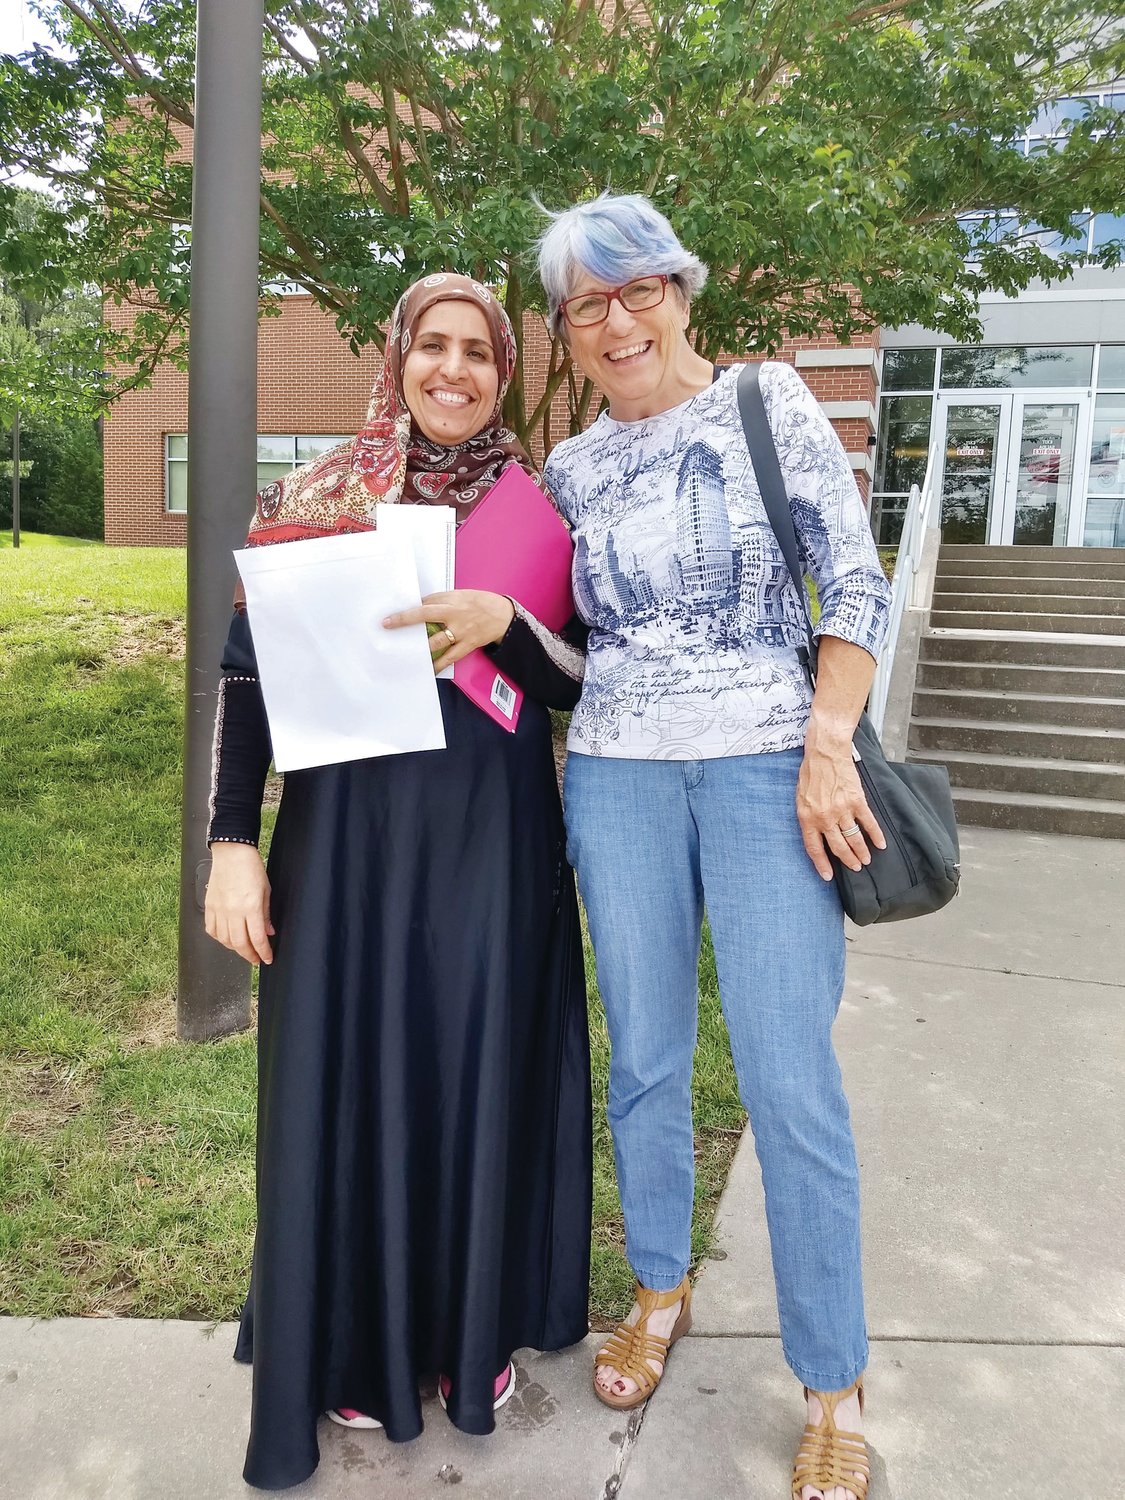 Suryah Zahmadi con su tutora de ciudadanía de Chatham Literacy, Joanne Caye, frente a la oficina de USCIS en el área Raleigh-Durham el 10 de junio de 2019, el día en que aprobó su examen de ciudadanía.